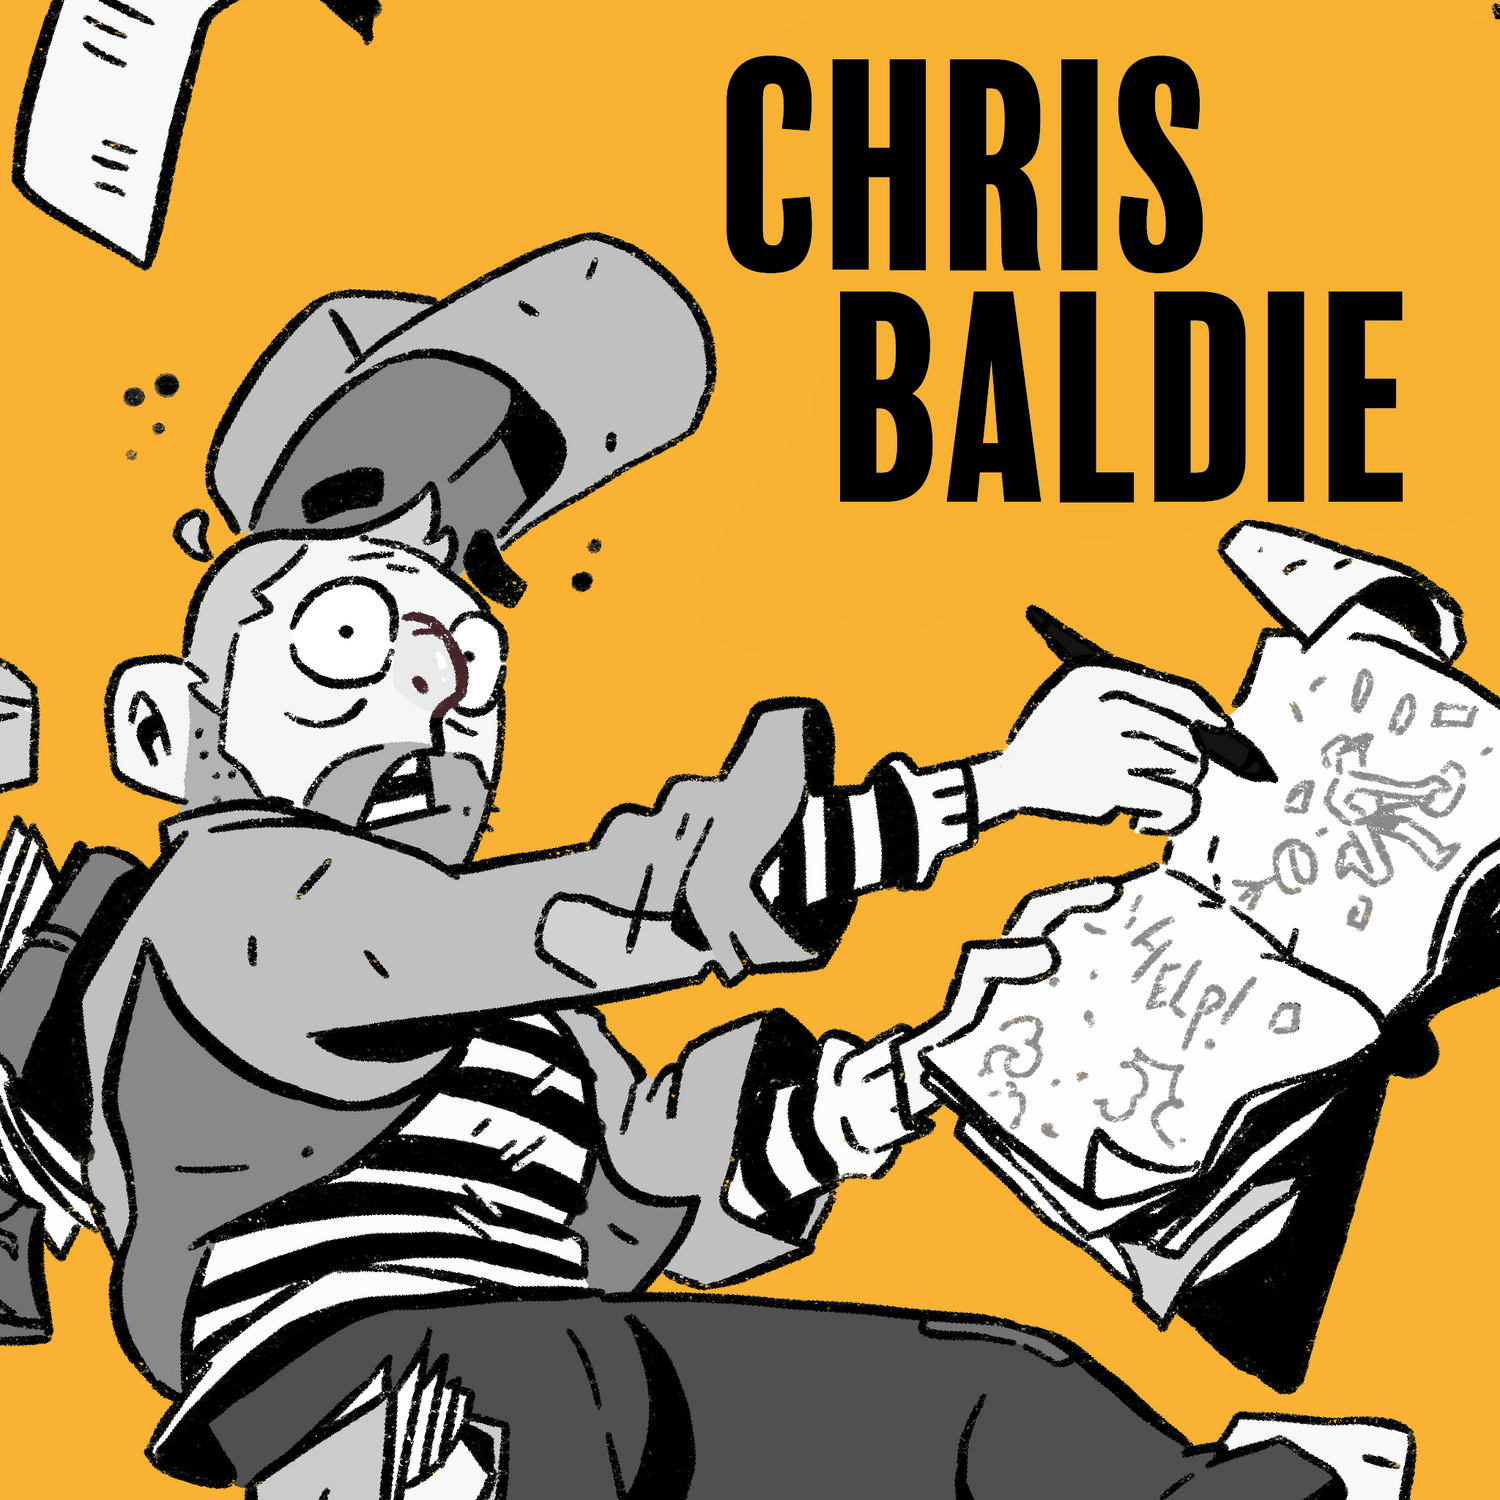 Chris Baldie